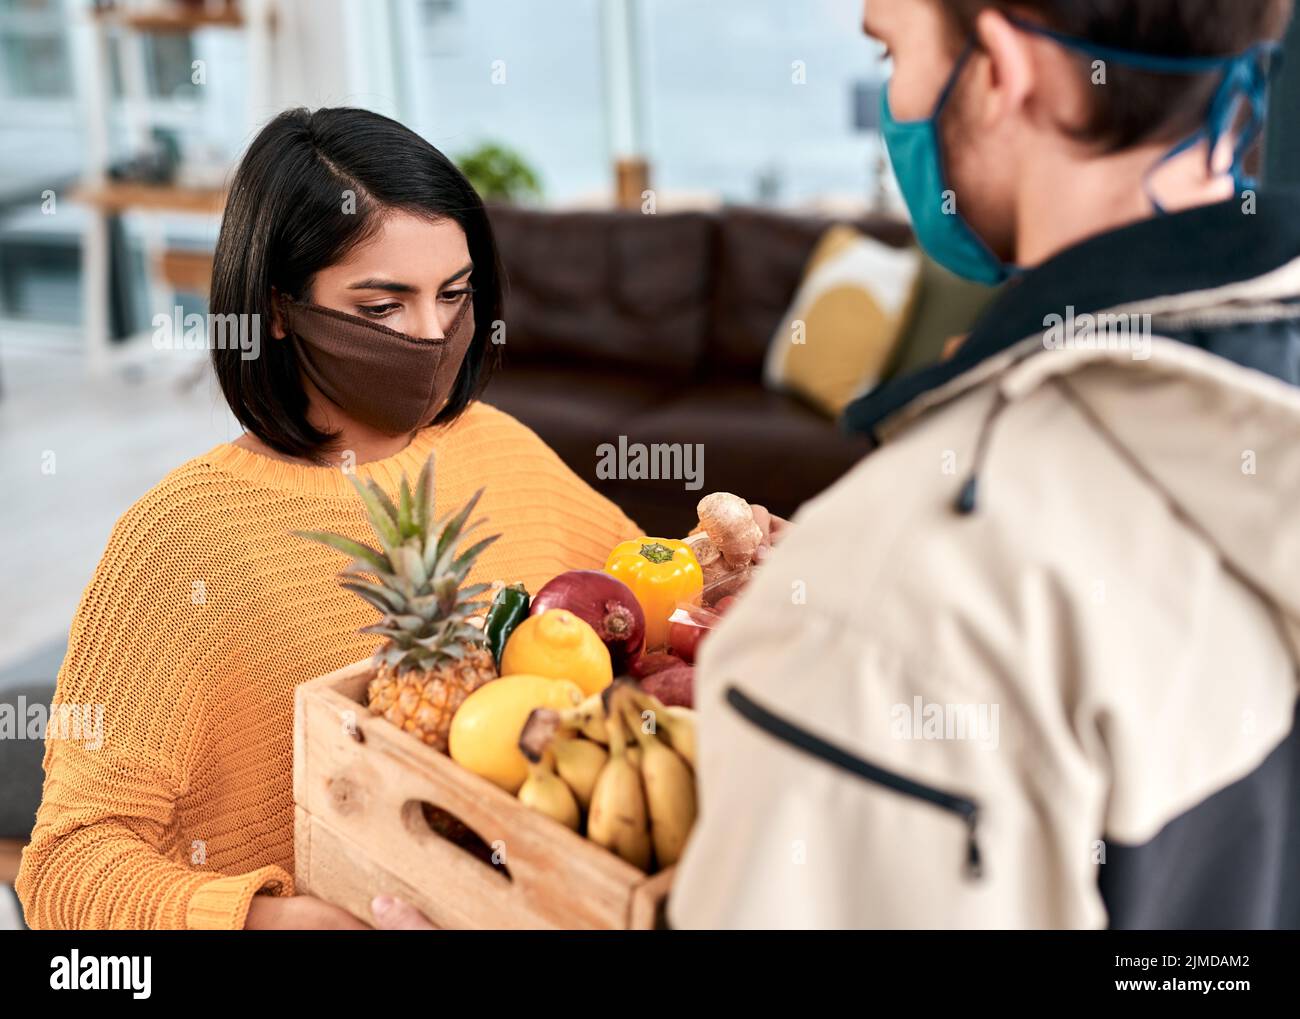 Das Geschäft mit der Hauszustellung boomt während der Sperrung. Eine maskierte junge Frau erhält eine Lieferung von frischem Obst und Gemüse zu Hause. Stockfoto